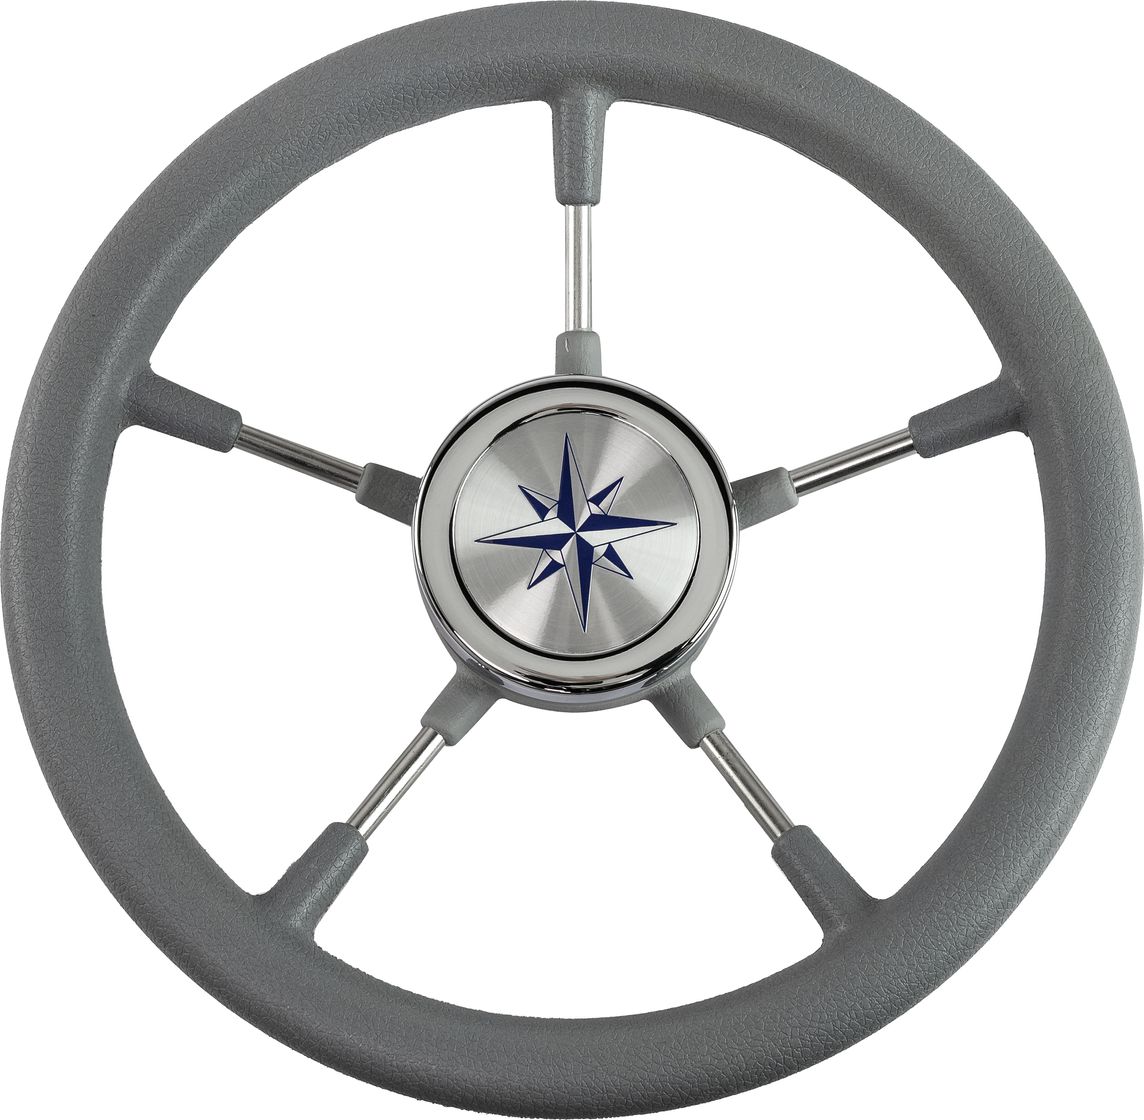 Рулевое колесо RIVA RSL обод серый, спицы серебряные д. 320 мм VN732022-03 рулевое колесо leader tanegum серый обод серебряные спицы д 330 мм vn7330 03